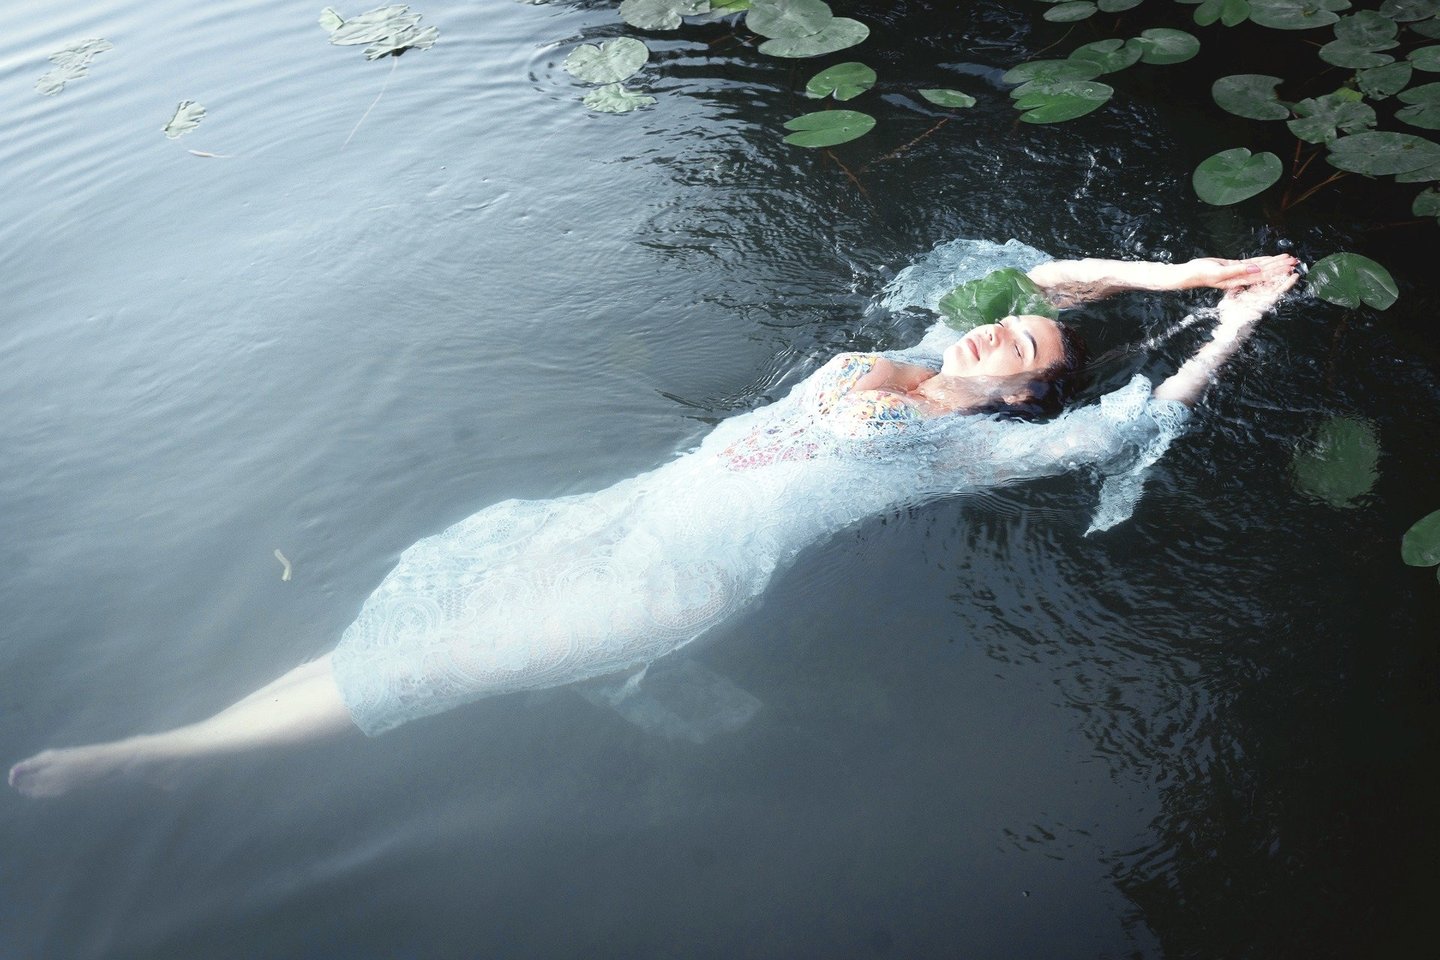 Maudynės Lietuvos ežeruose Ilką Adams išmokė geriau plaukti, padeda atgauti jėgas ir pajusti ryšį su gamta.<br>V.Jakovonienės nuotr.